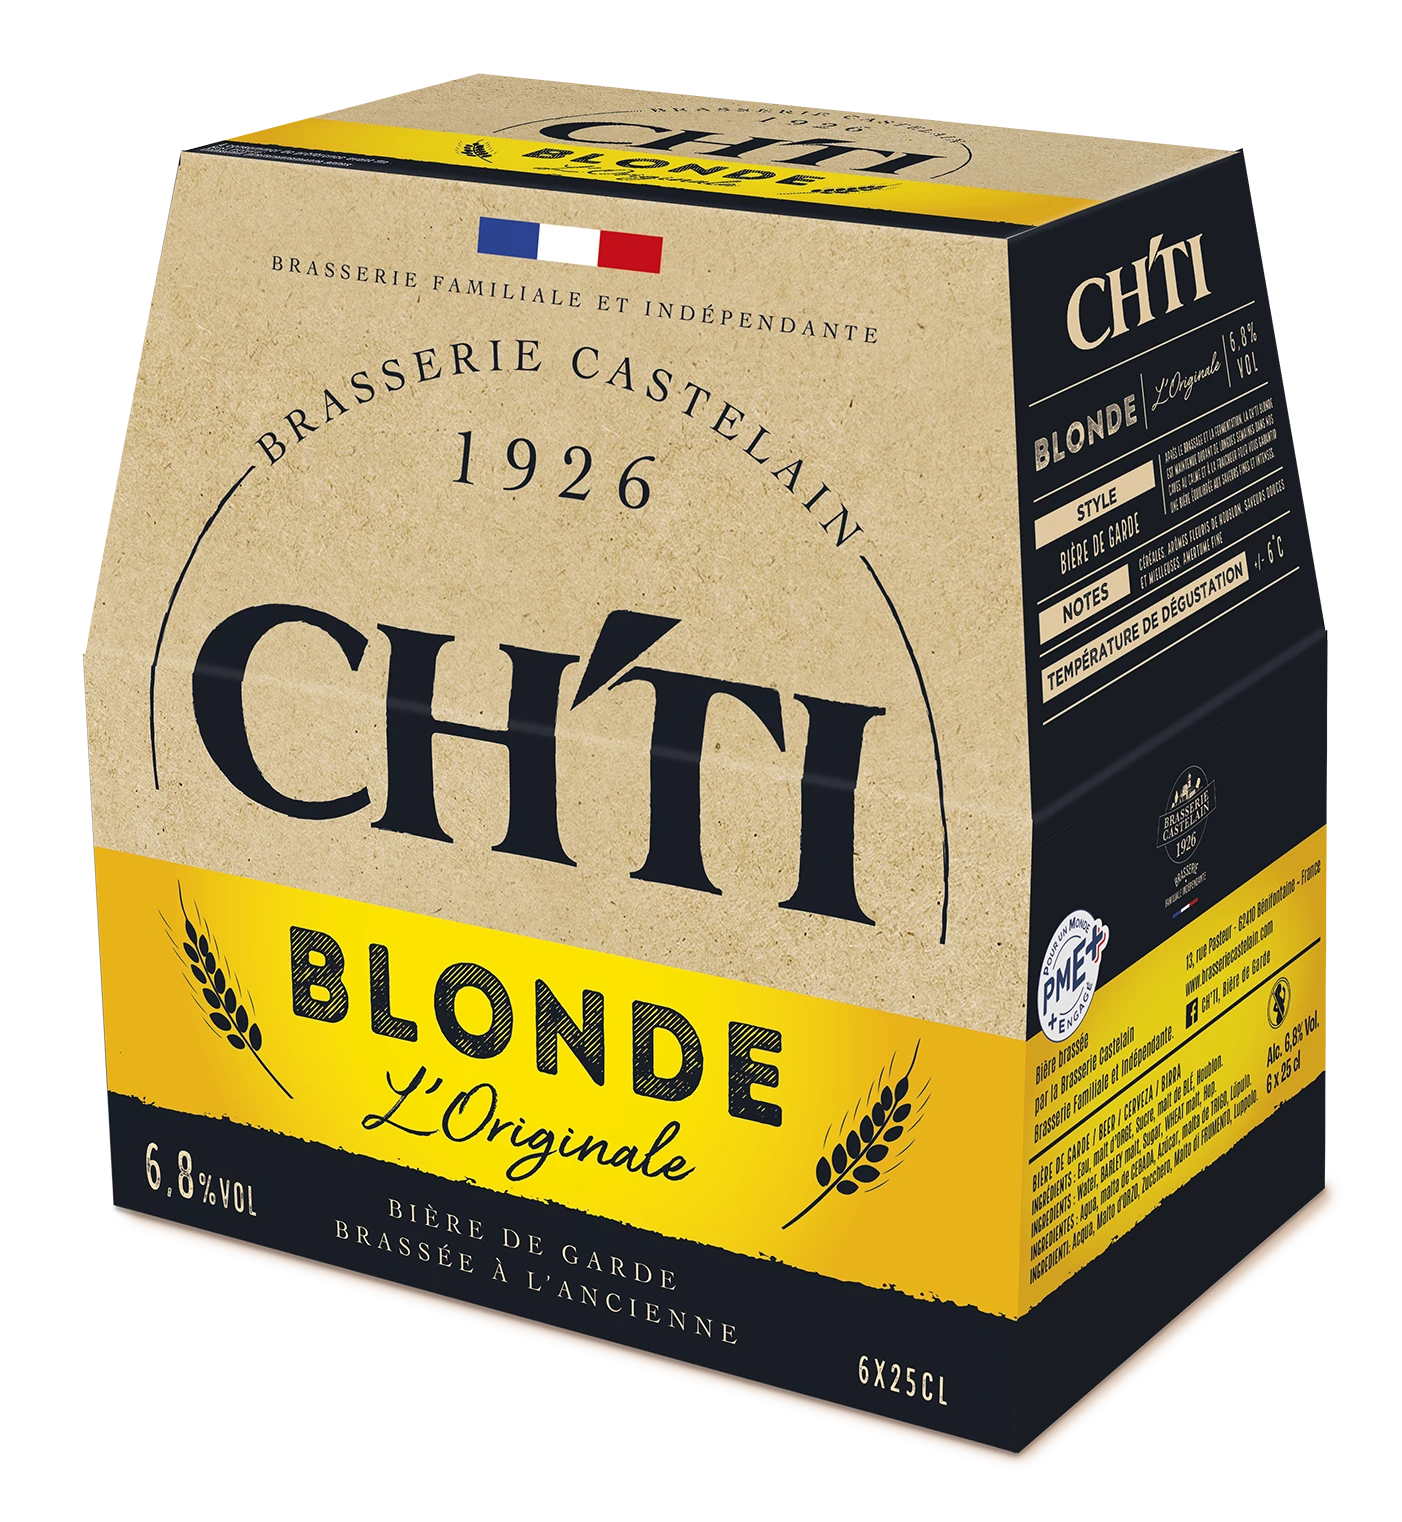 Bière Originale Blonde, 6°8, 6x25cl - CH'TI